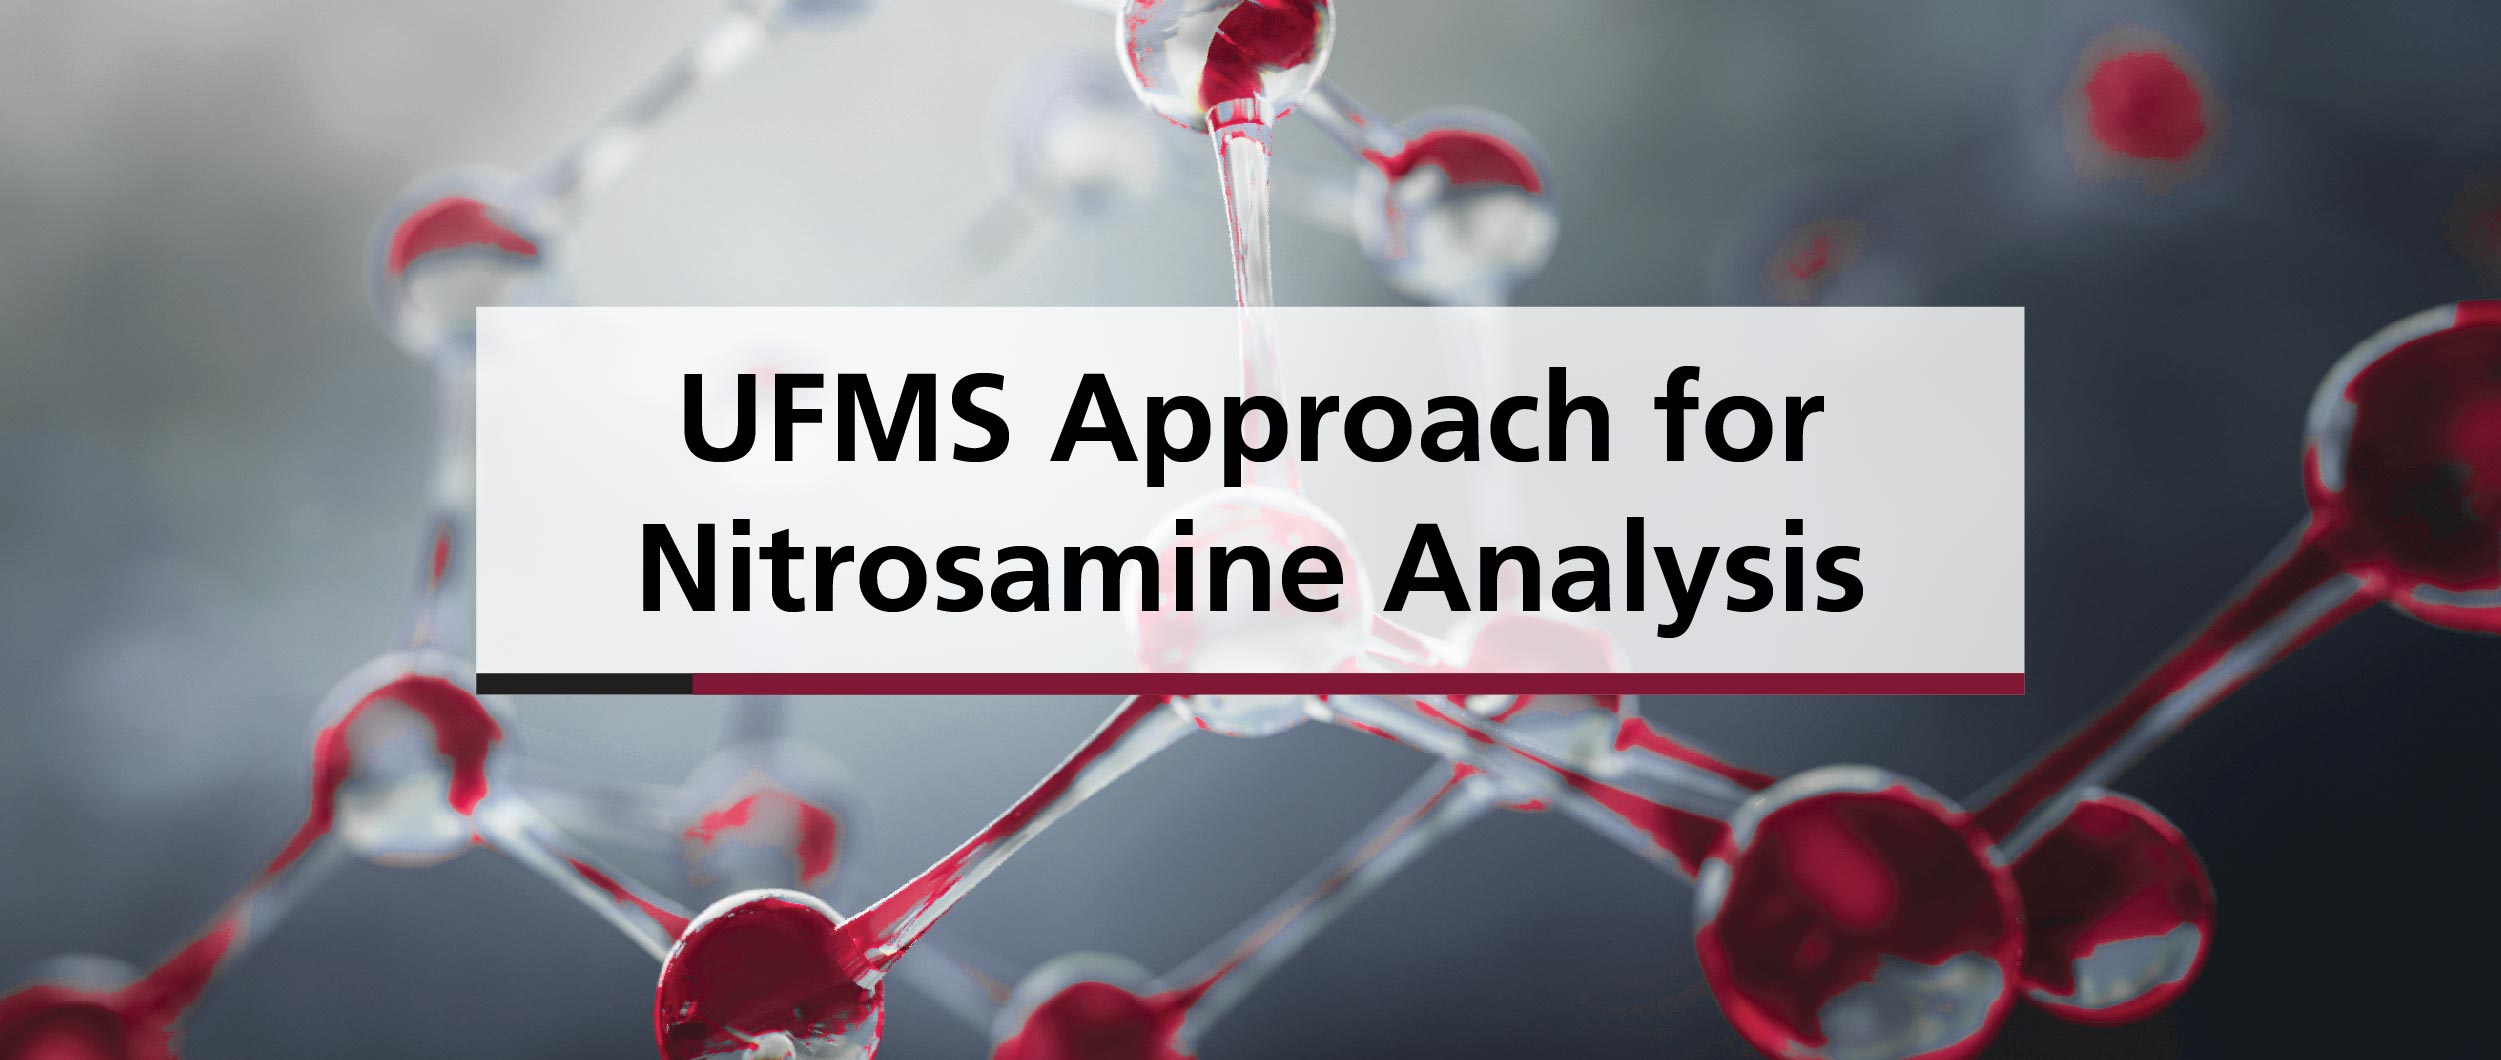 UFMS Approach for Nitrosamine Analysis